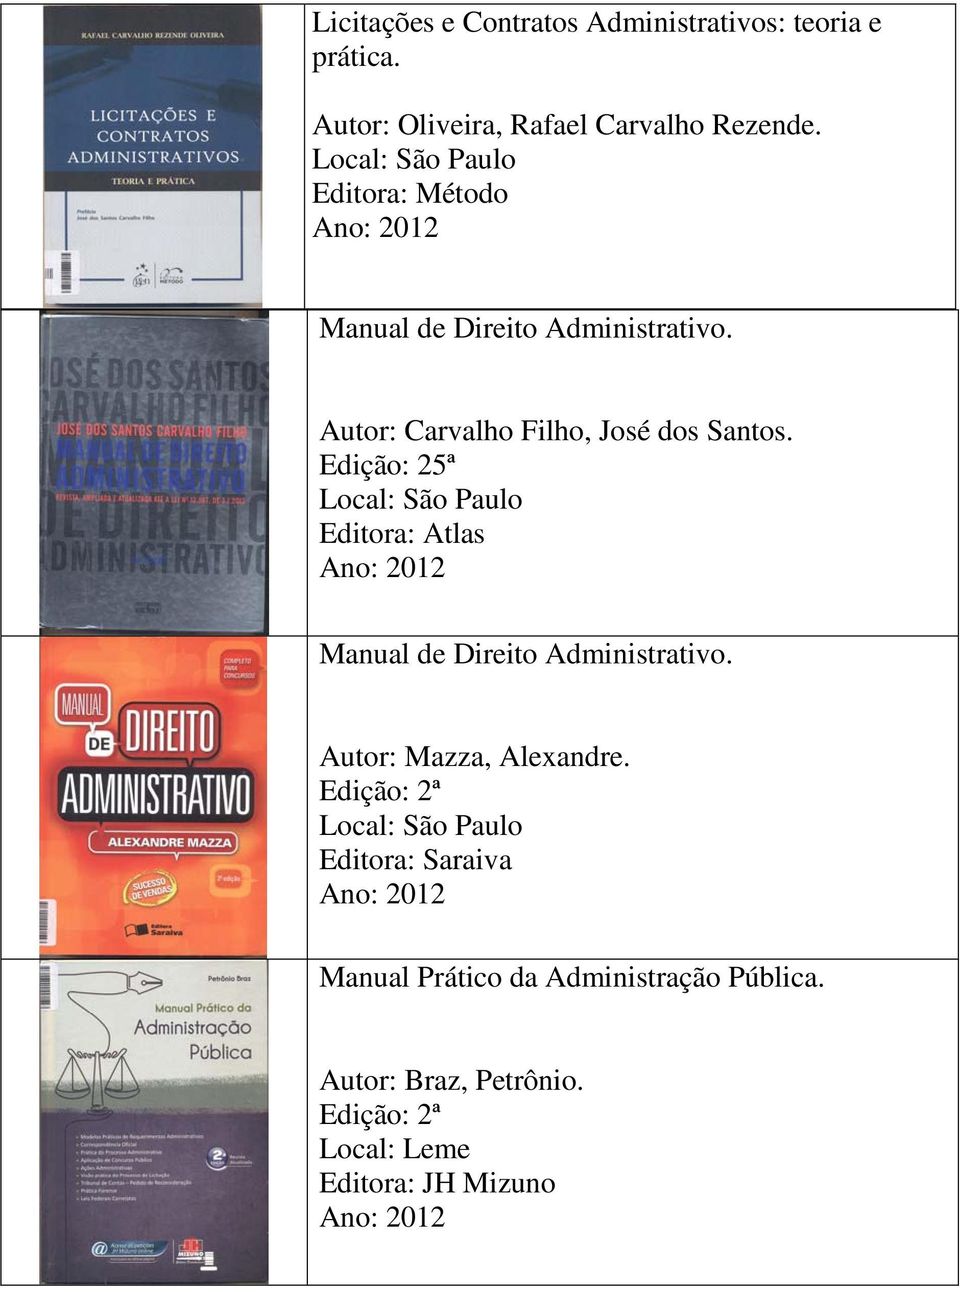 Autor: Carvalho Filho, José dos Santos. Edição: 25ª Manual de Direito Administrativo.